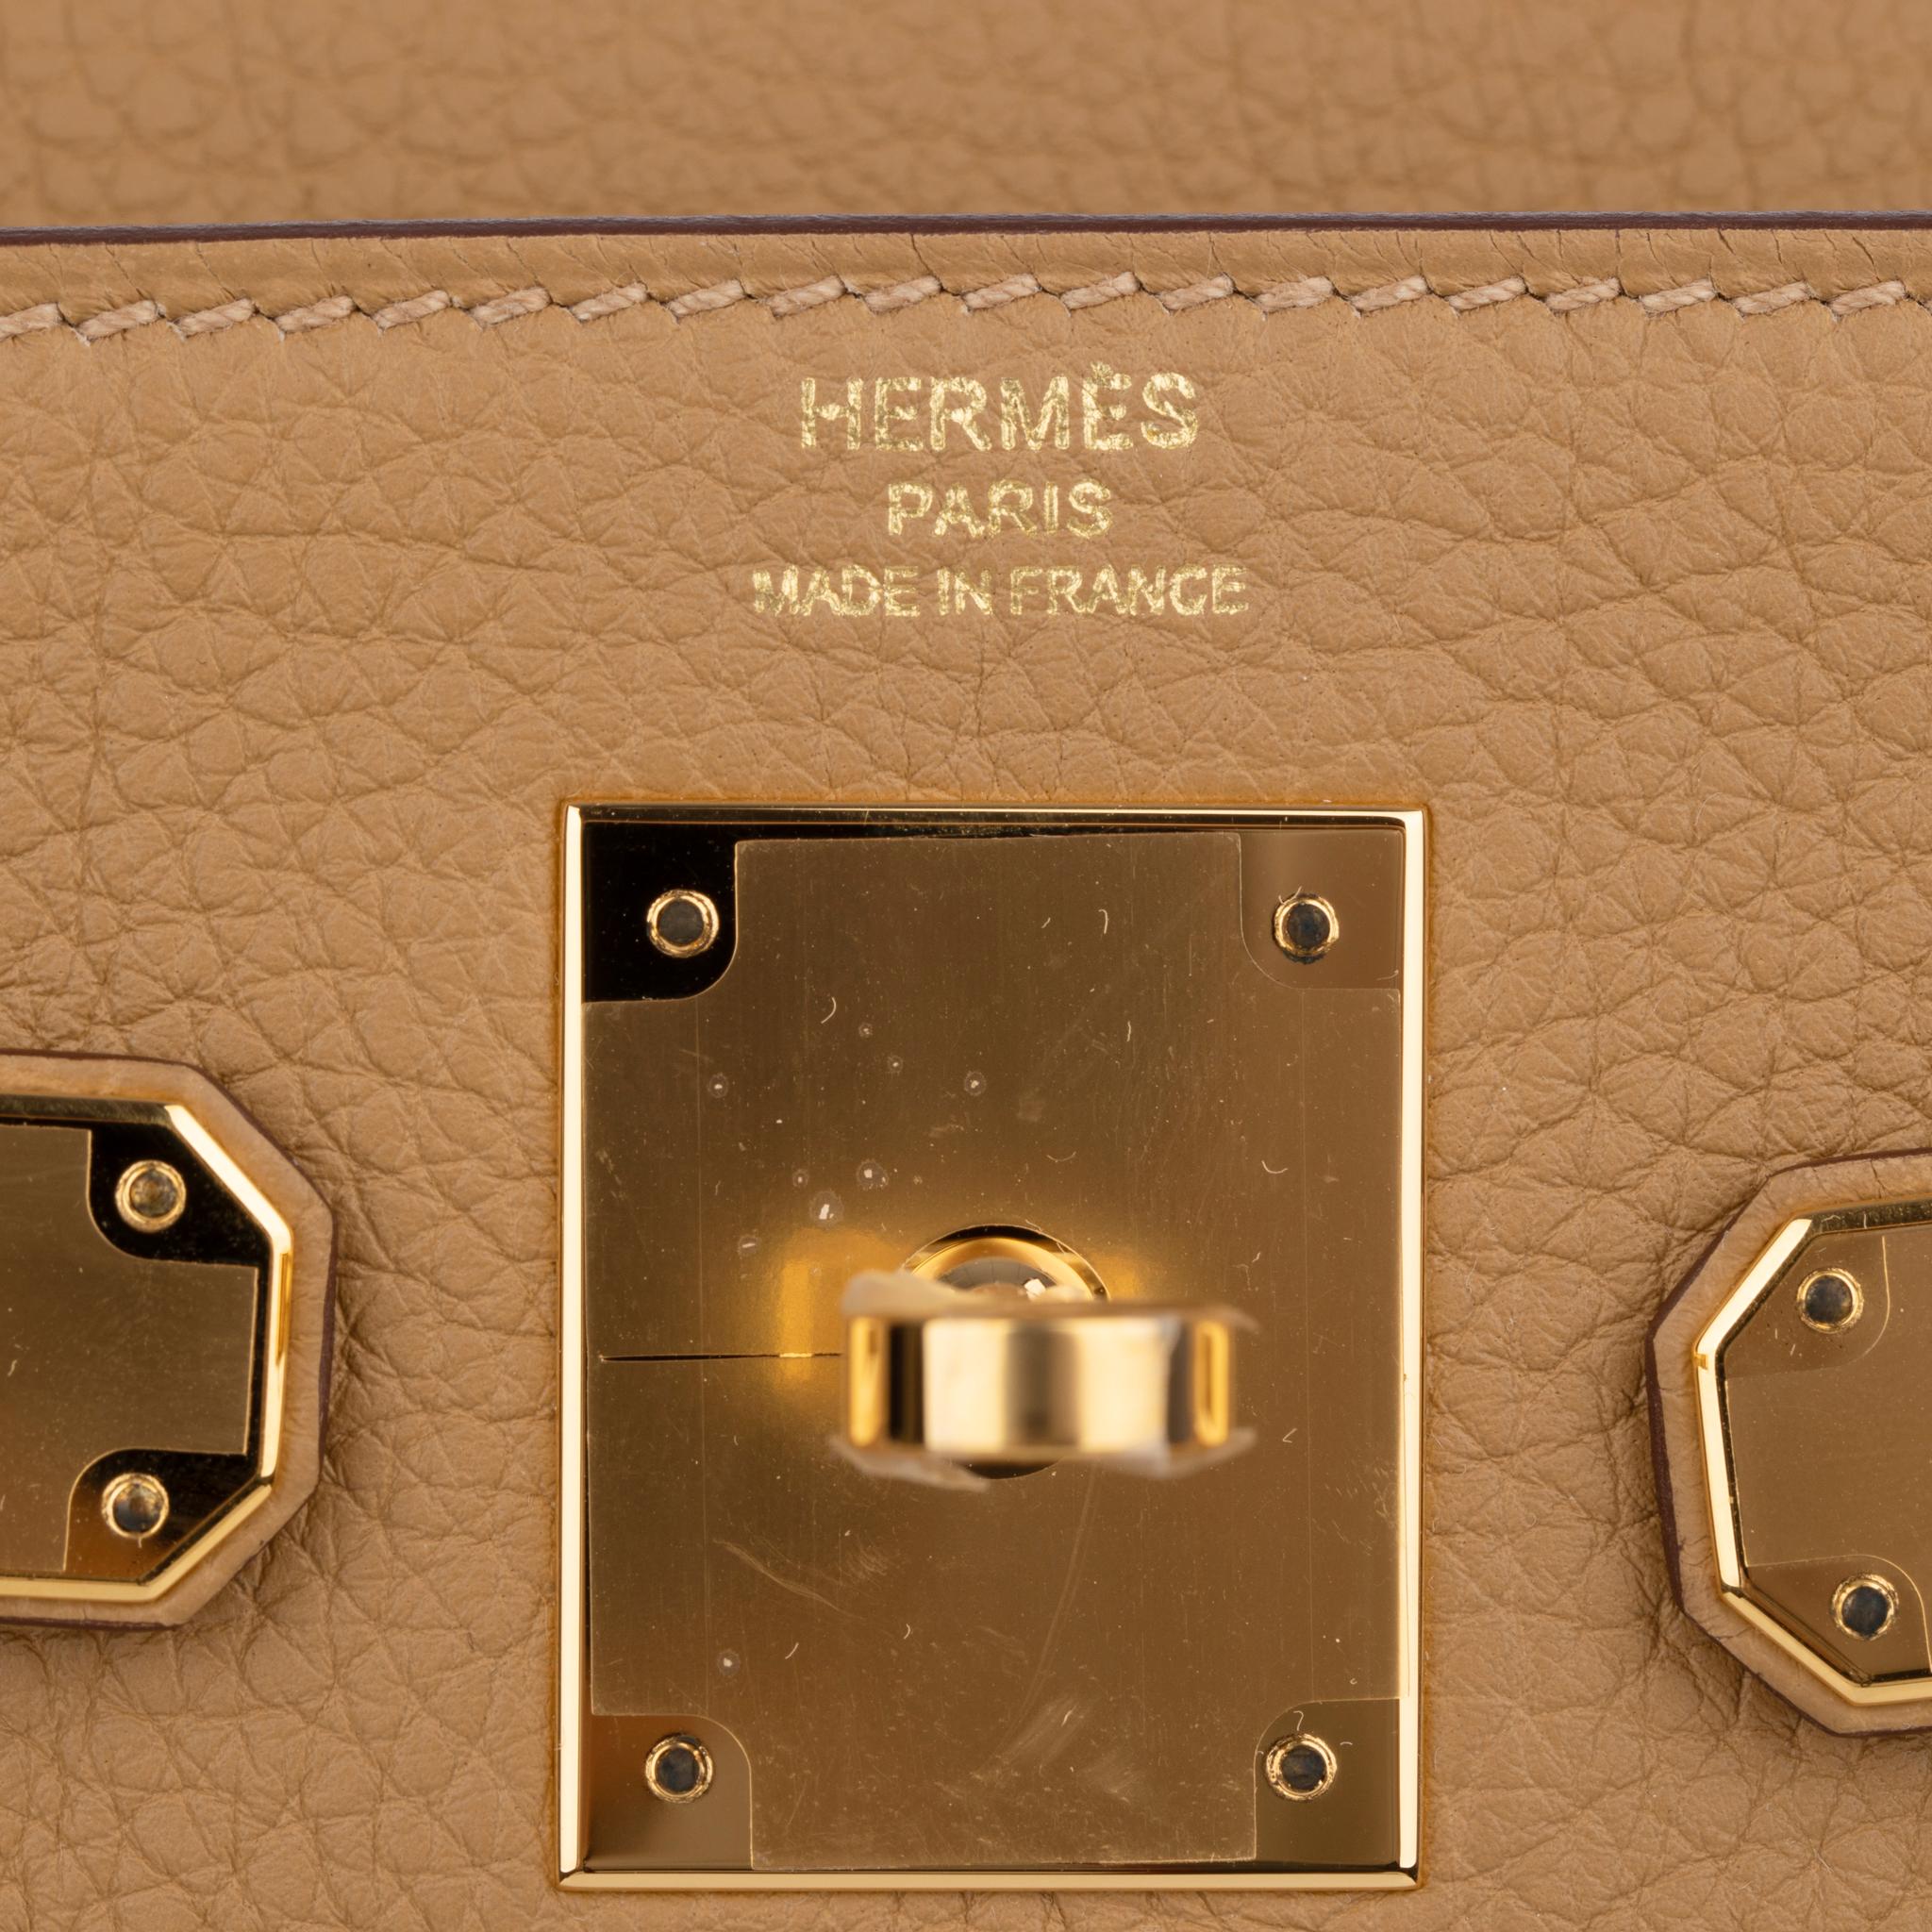 Le Kelly 28cm d'Hermès, en cuir Togo biscuit et métal doré, est un mélange harmonieux de luxe discret et de savoir-faire impeccable.

Fabriqué à la main par les artisans d'Icone, ce sac emblématique respire la sophistication grâce à son design